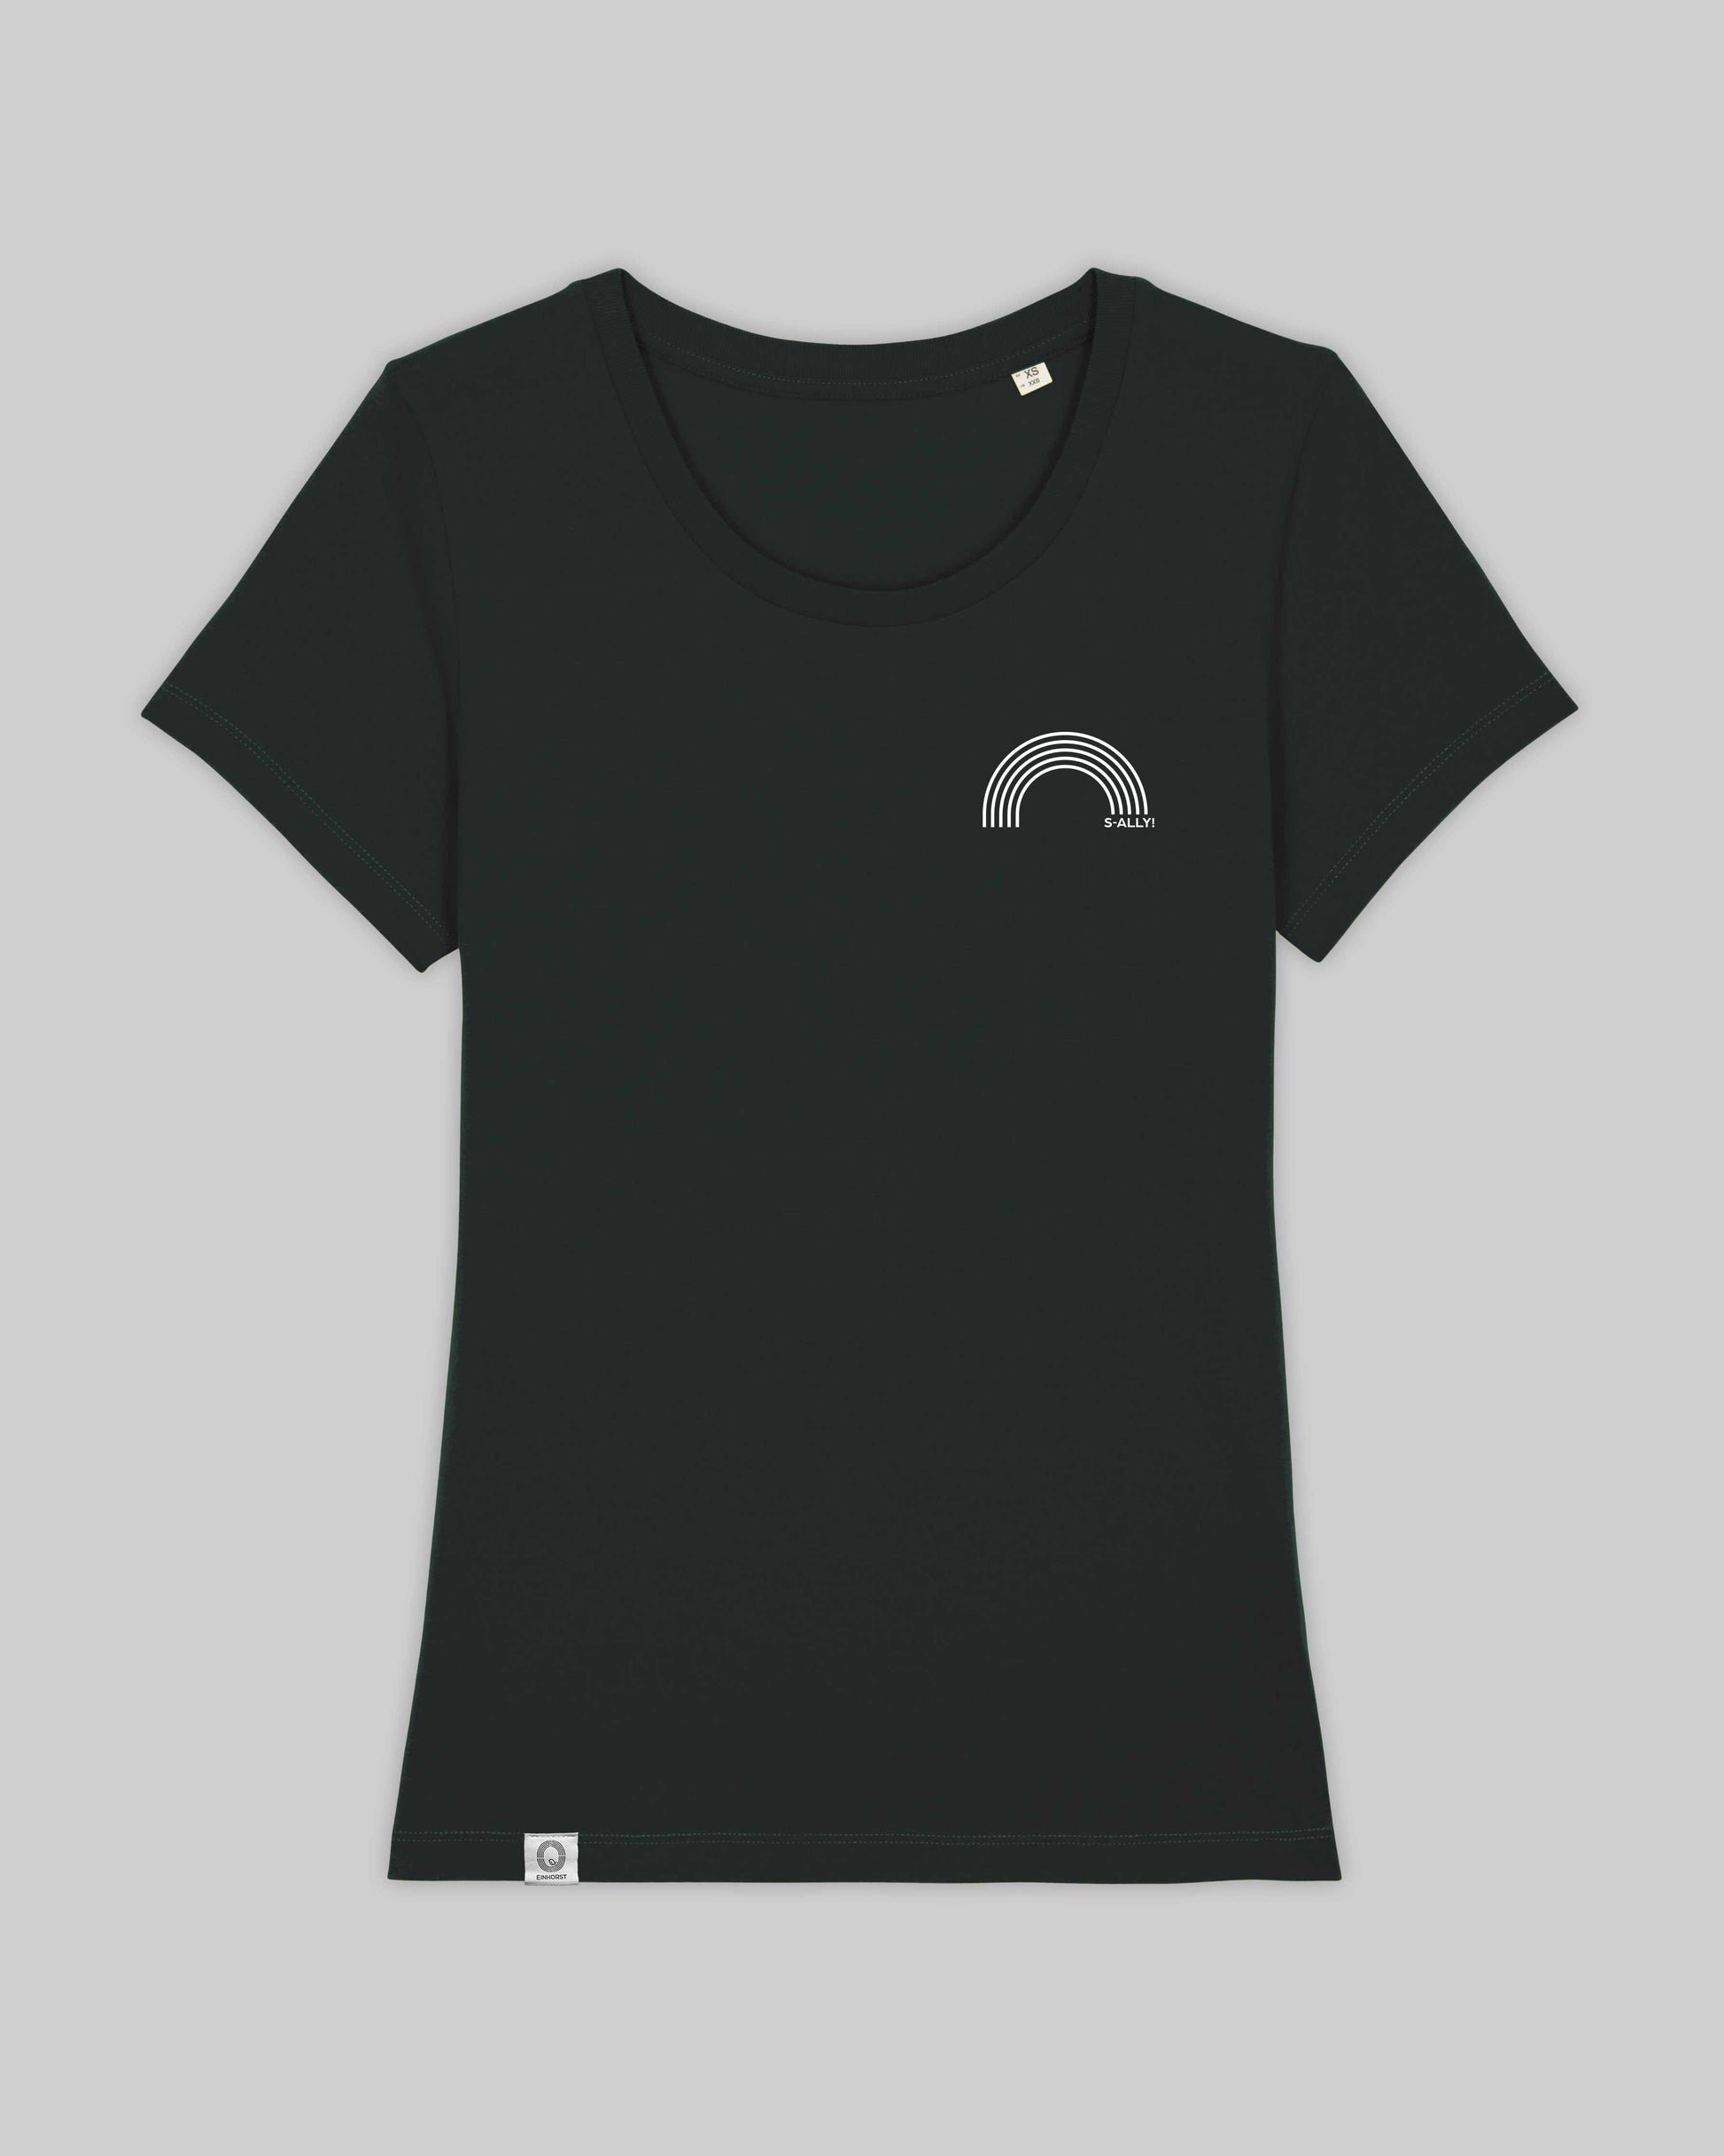 EINHORST® Organic Shirt tailliert in "Schwarz" mit dem Motiv "s-ally Regenbogen" in der Kombination weißer Regenbogen mit weißer Schrift, Bild von Shirt von vorne